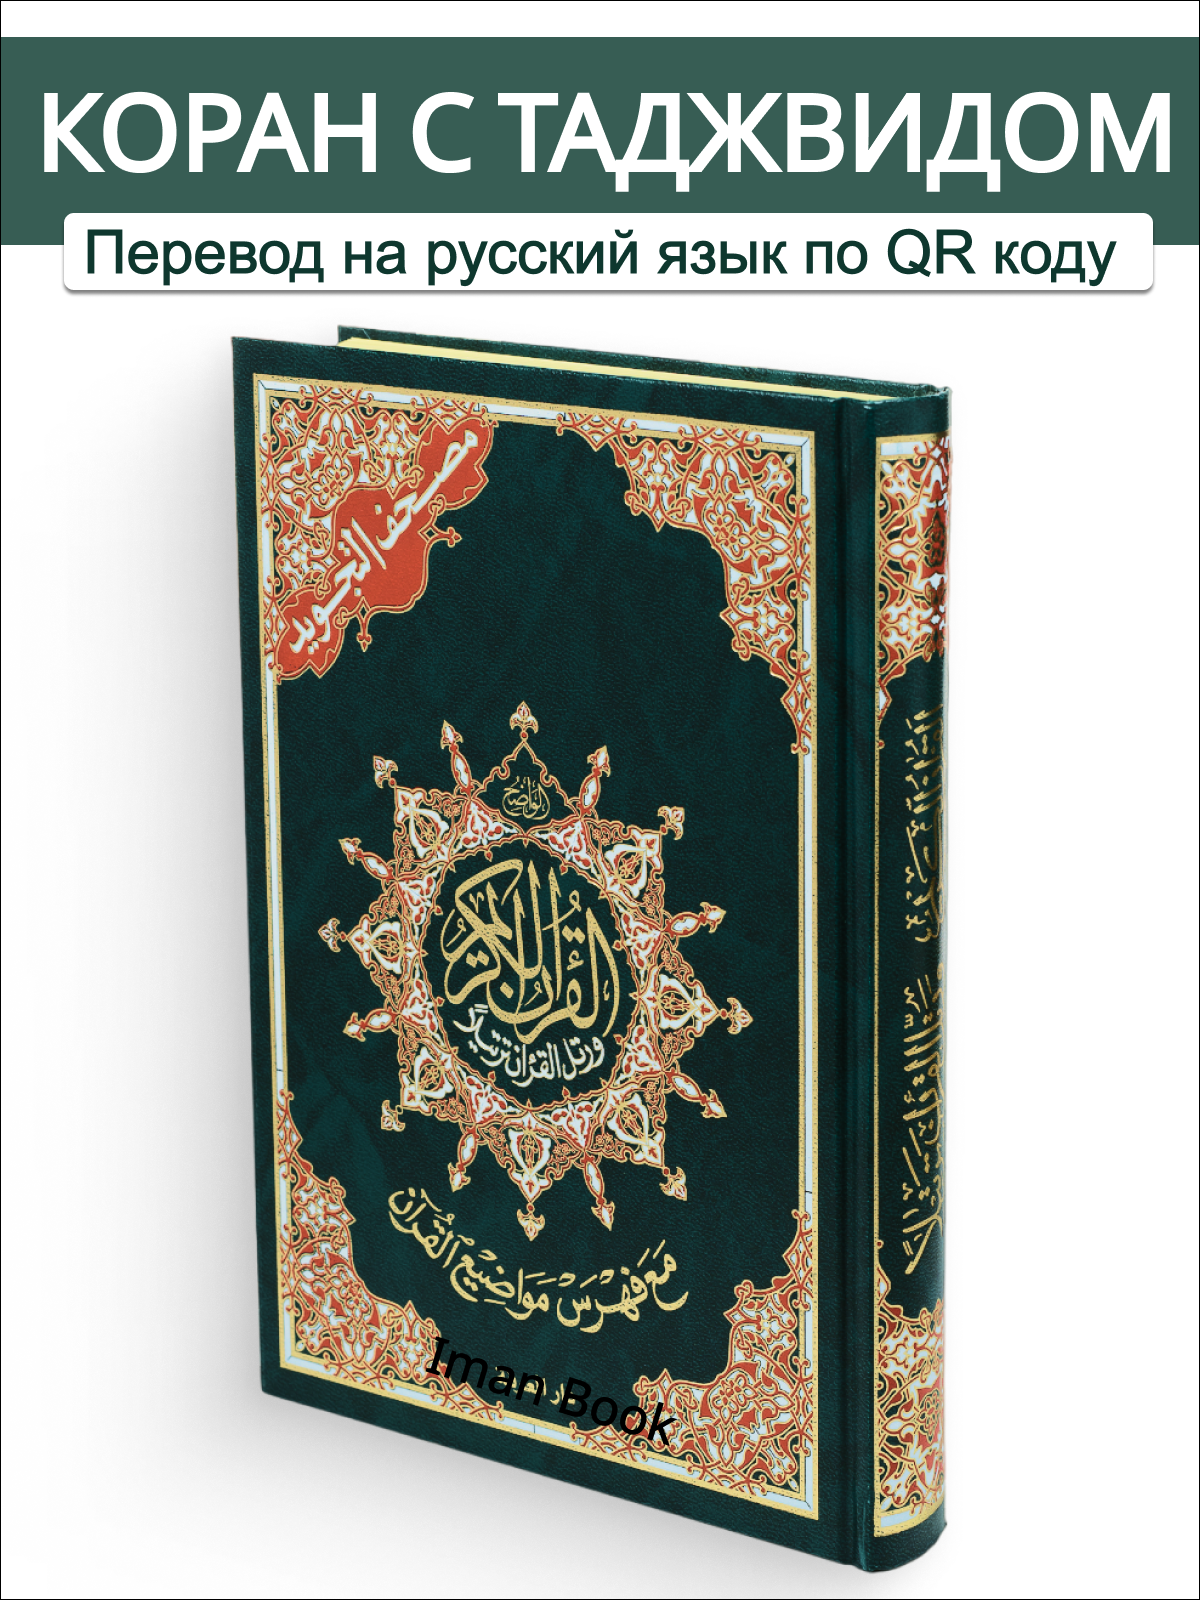 Коран на арабском языке с таджвидом